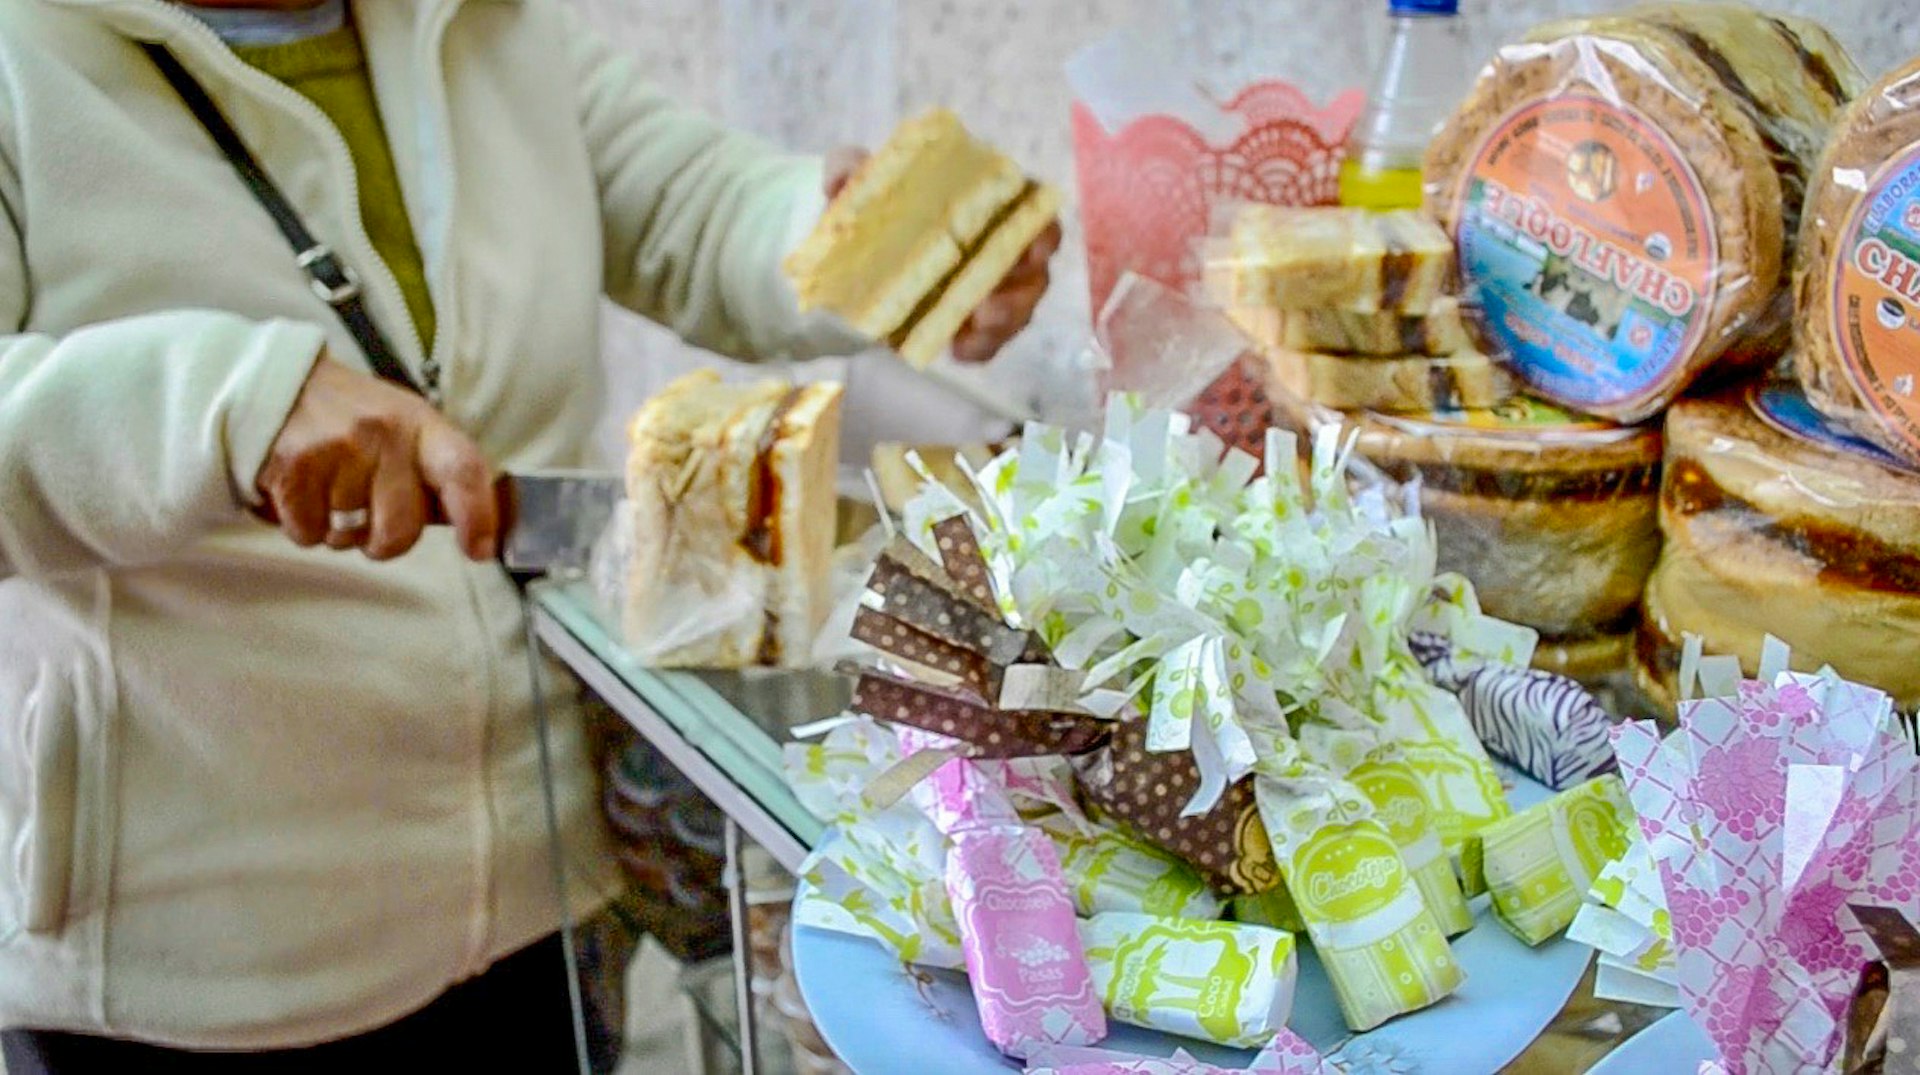 A woman cuts a dessert inPeru